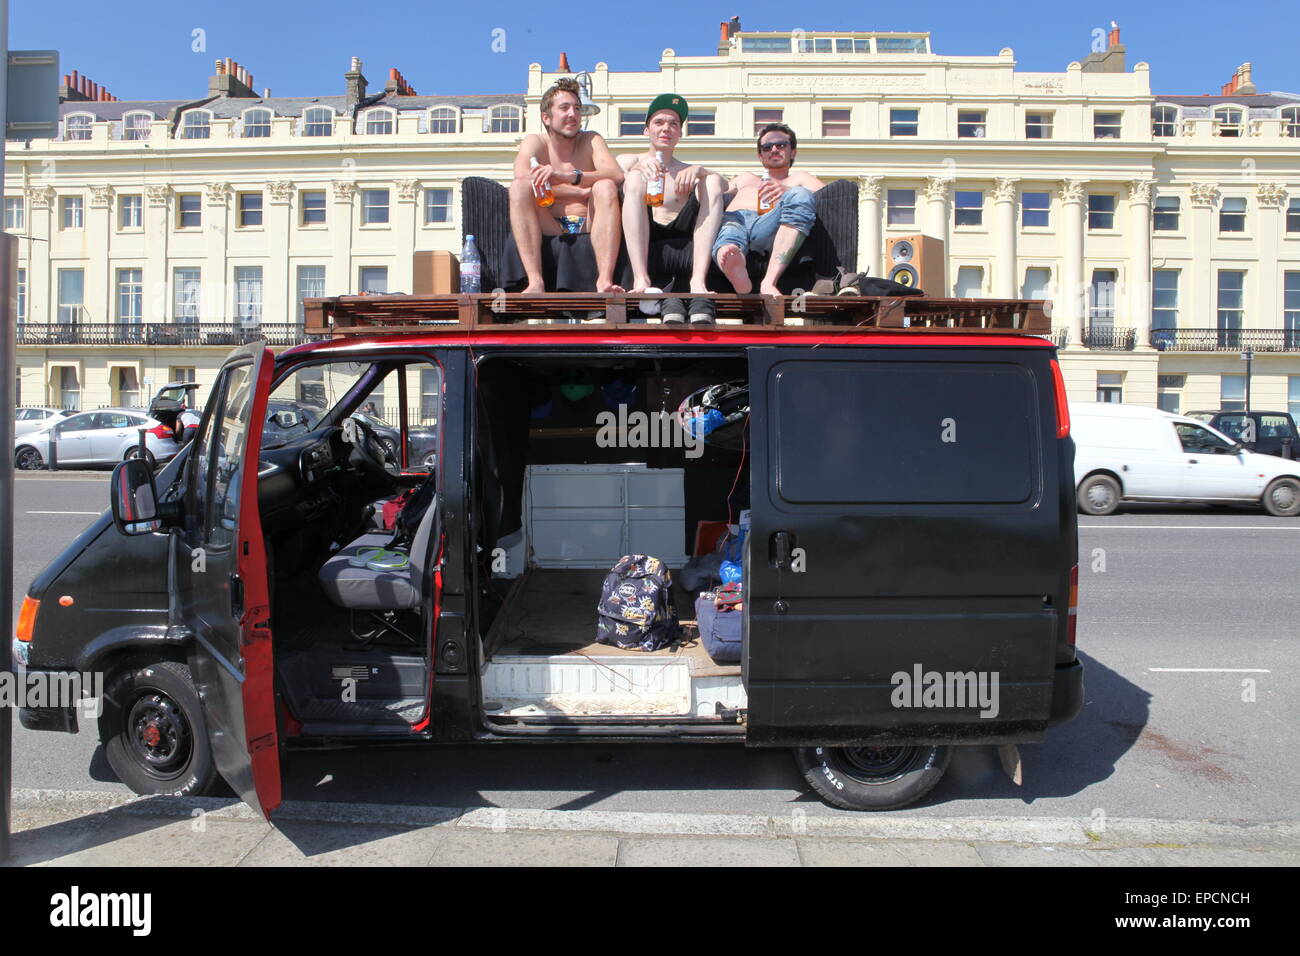 Trois jeunes hommes boivent de la bière sur un canapé sur le dessus d'un van au soleil le samedi 16 mai 2015 à Brighton, Royaume-Uni Banque D'Images